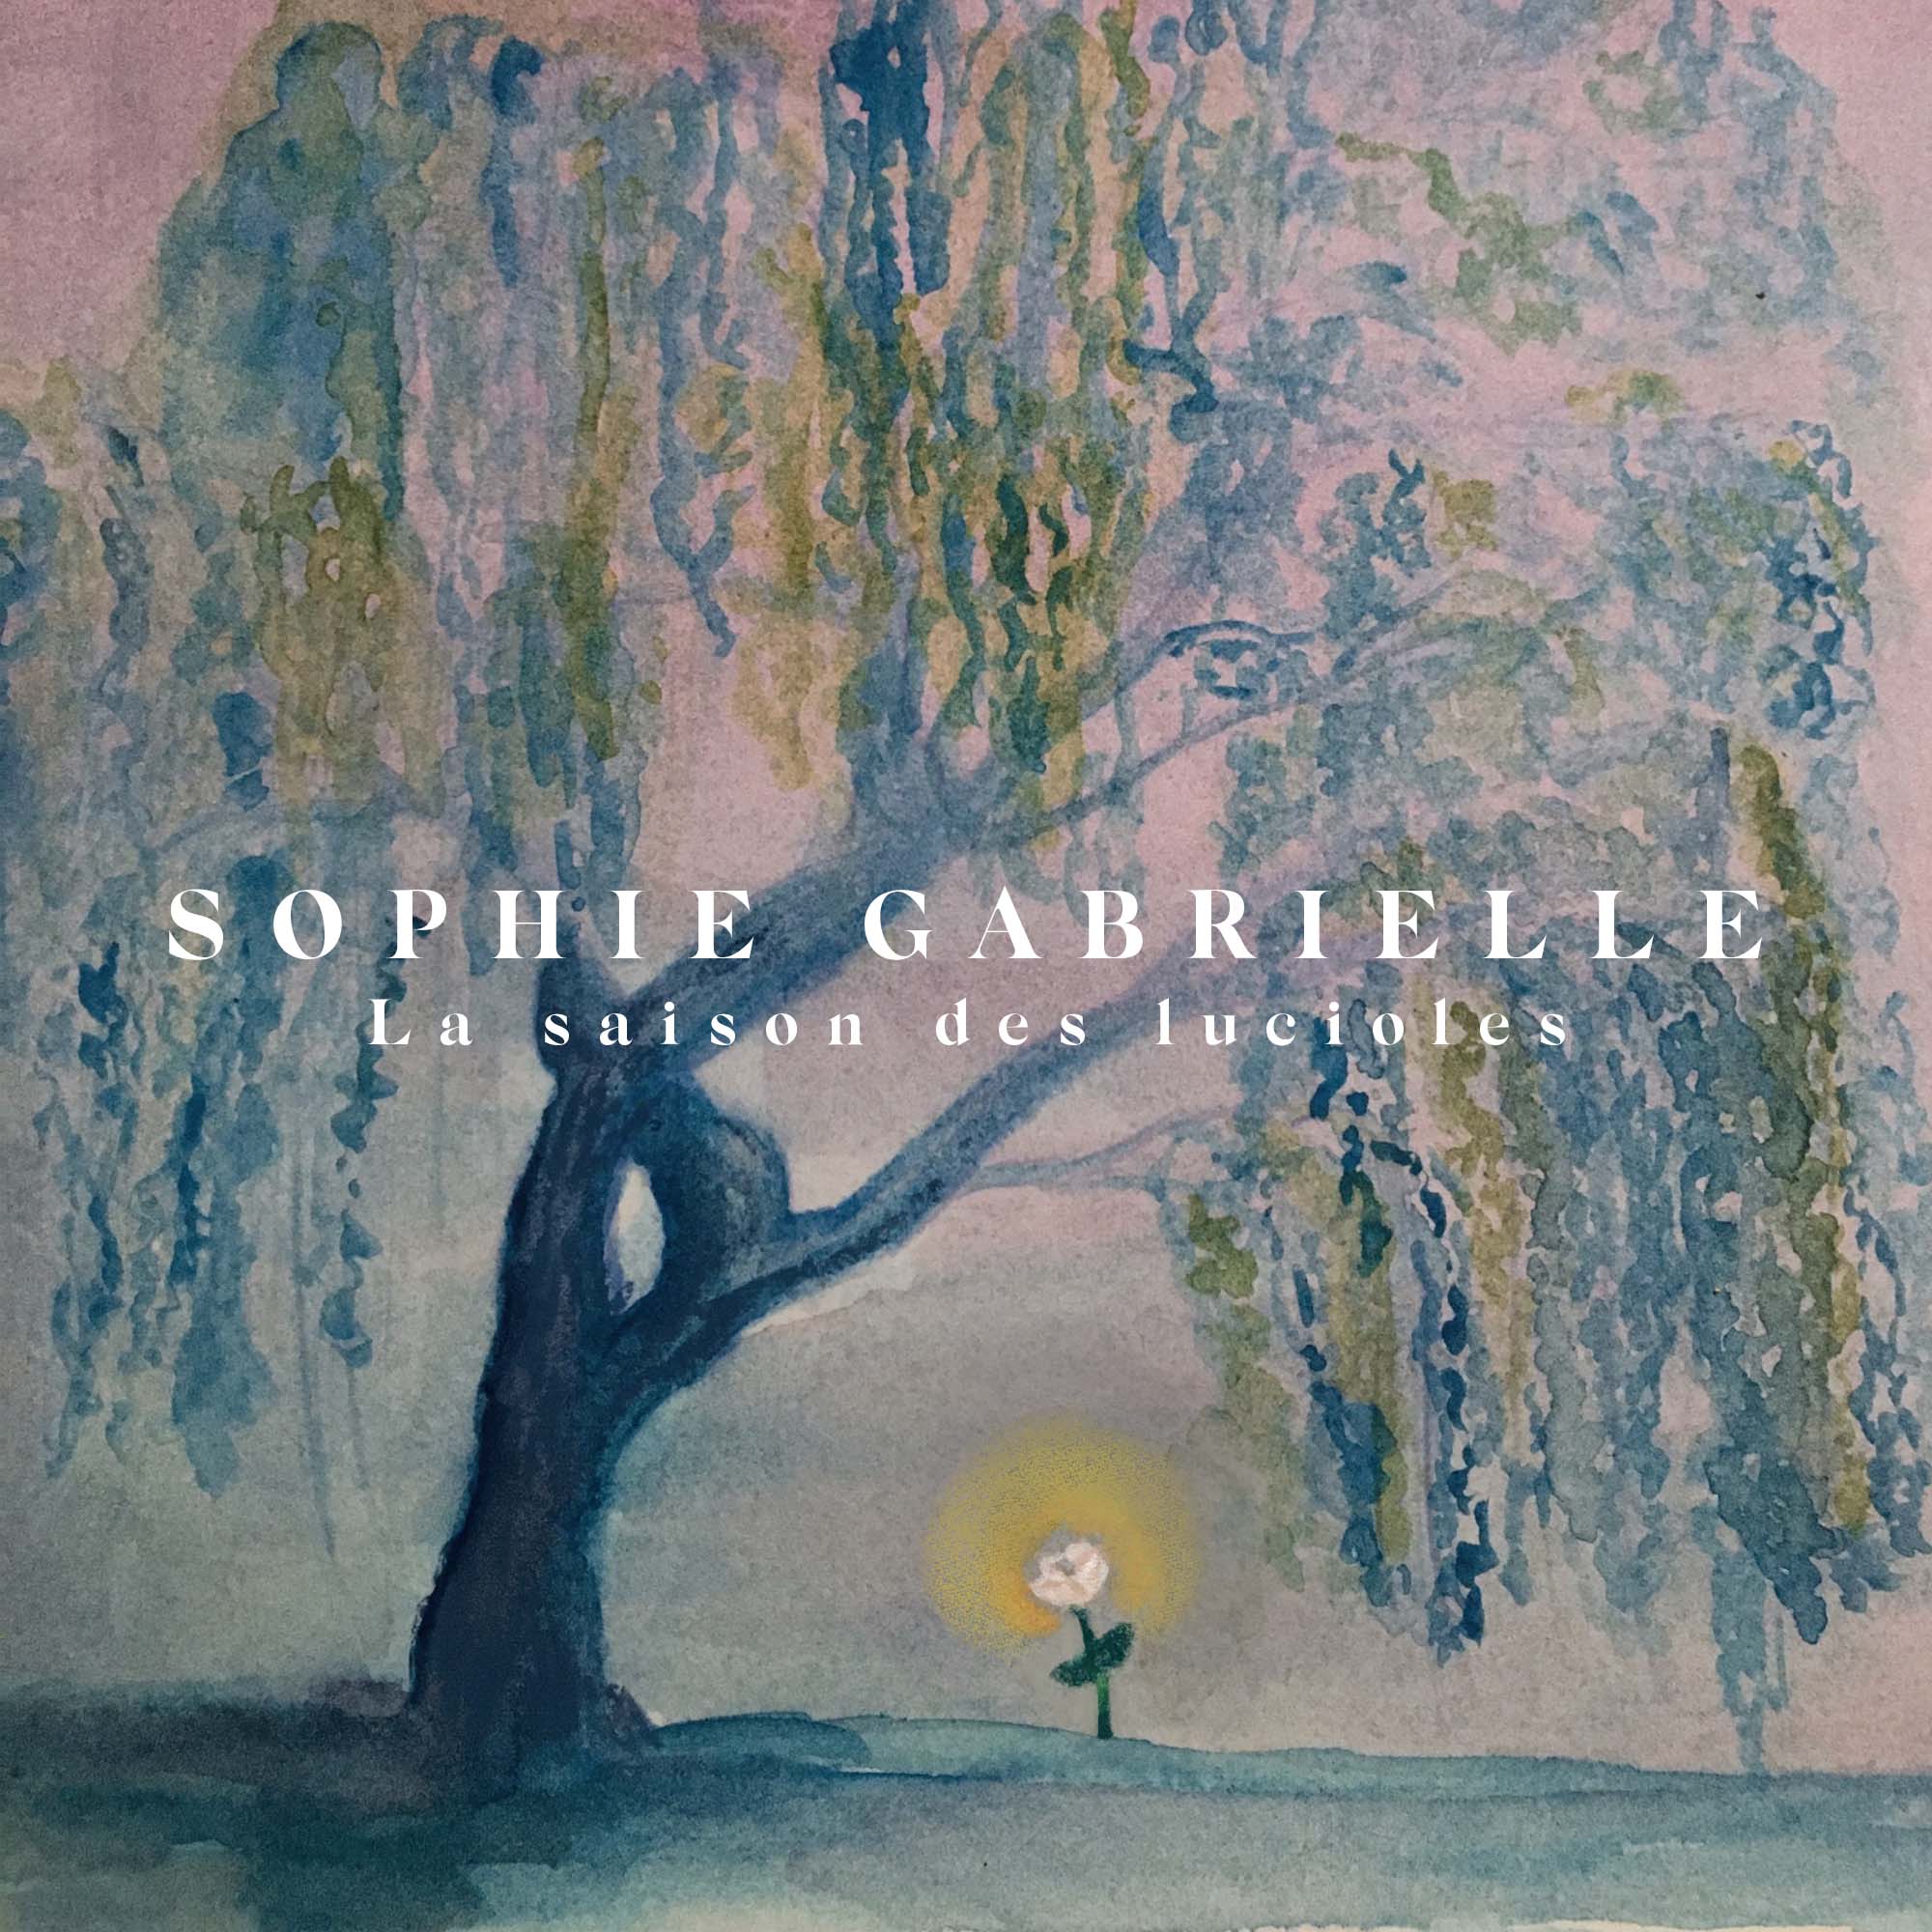 Sophie Gabrielle